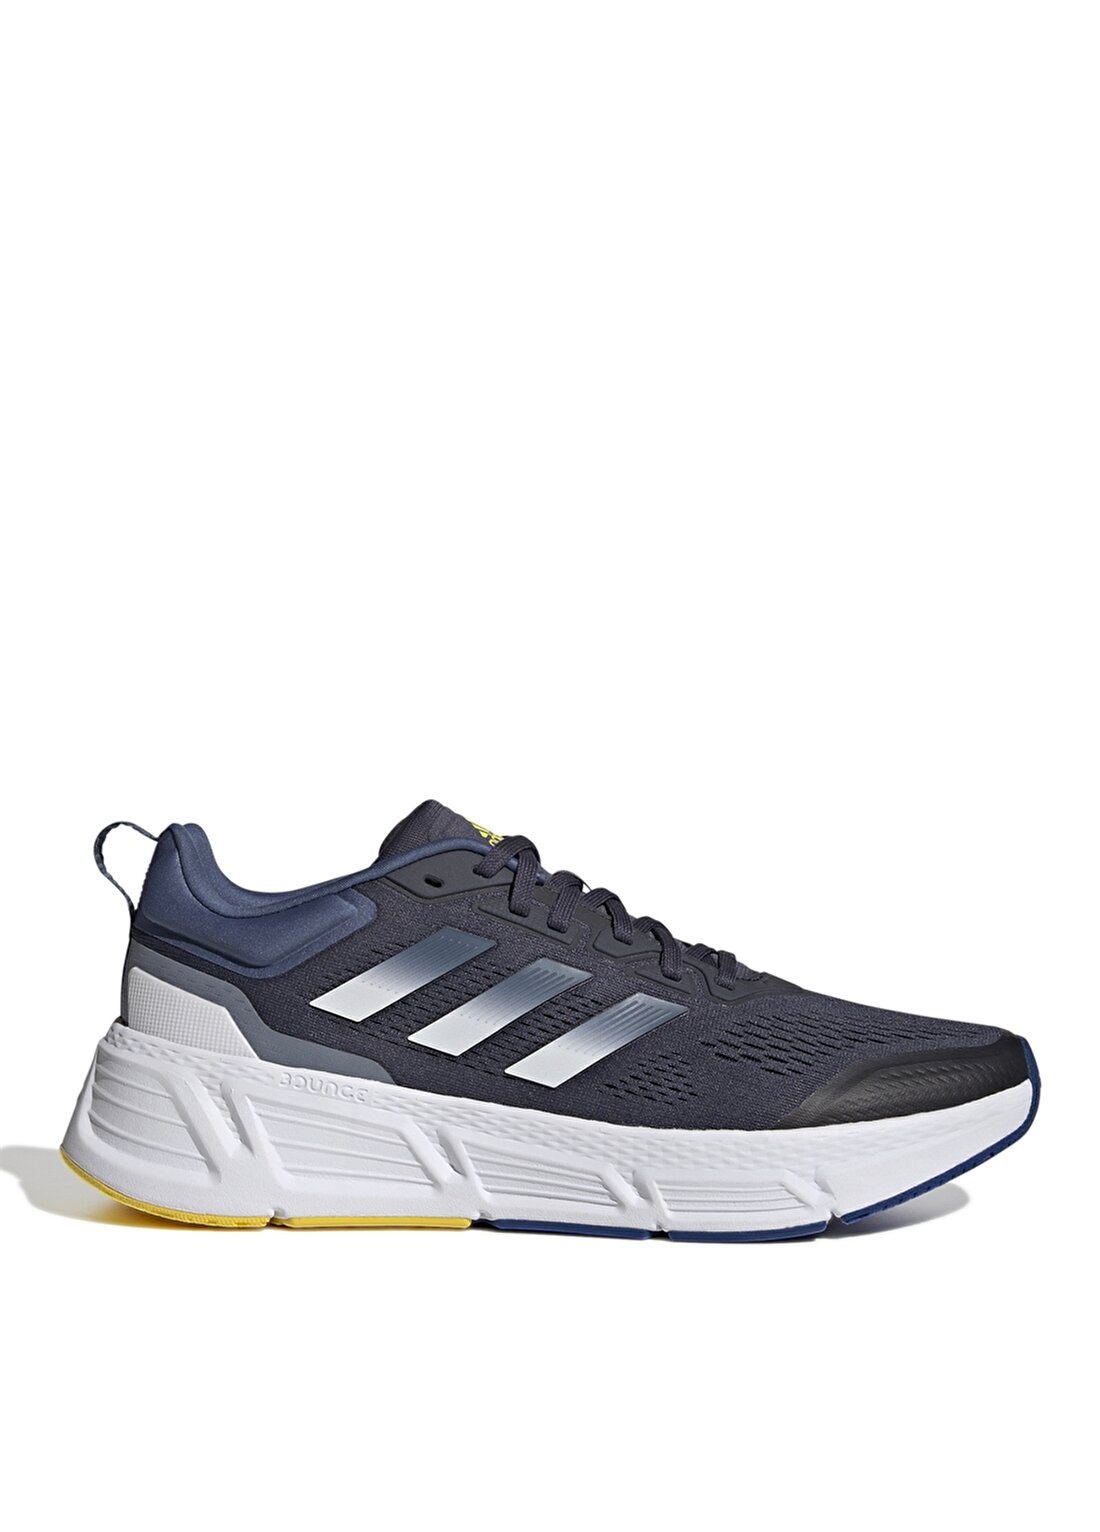 Adidas Beyaz - Koyu Mavi Erkek Koşu Ayakkabısı GY2261 ADISTAR TD